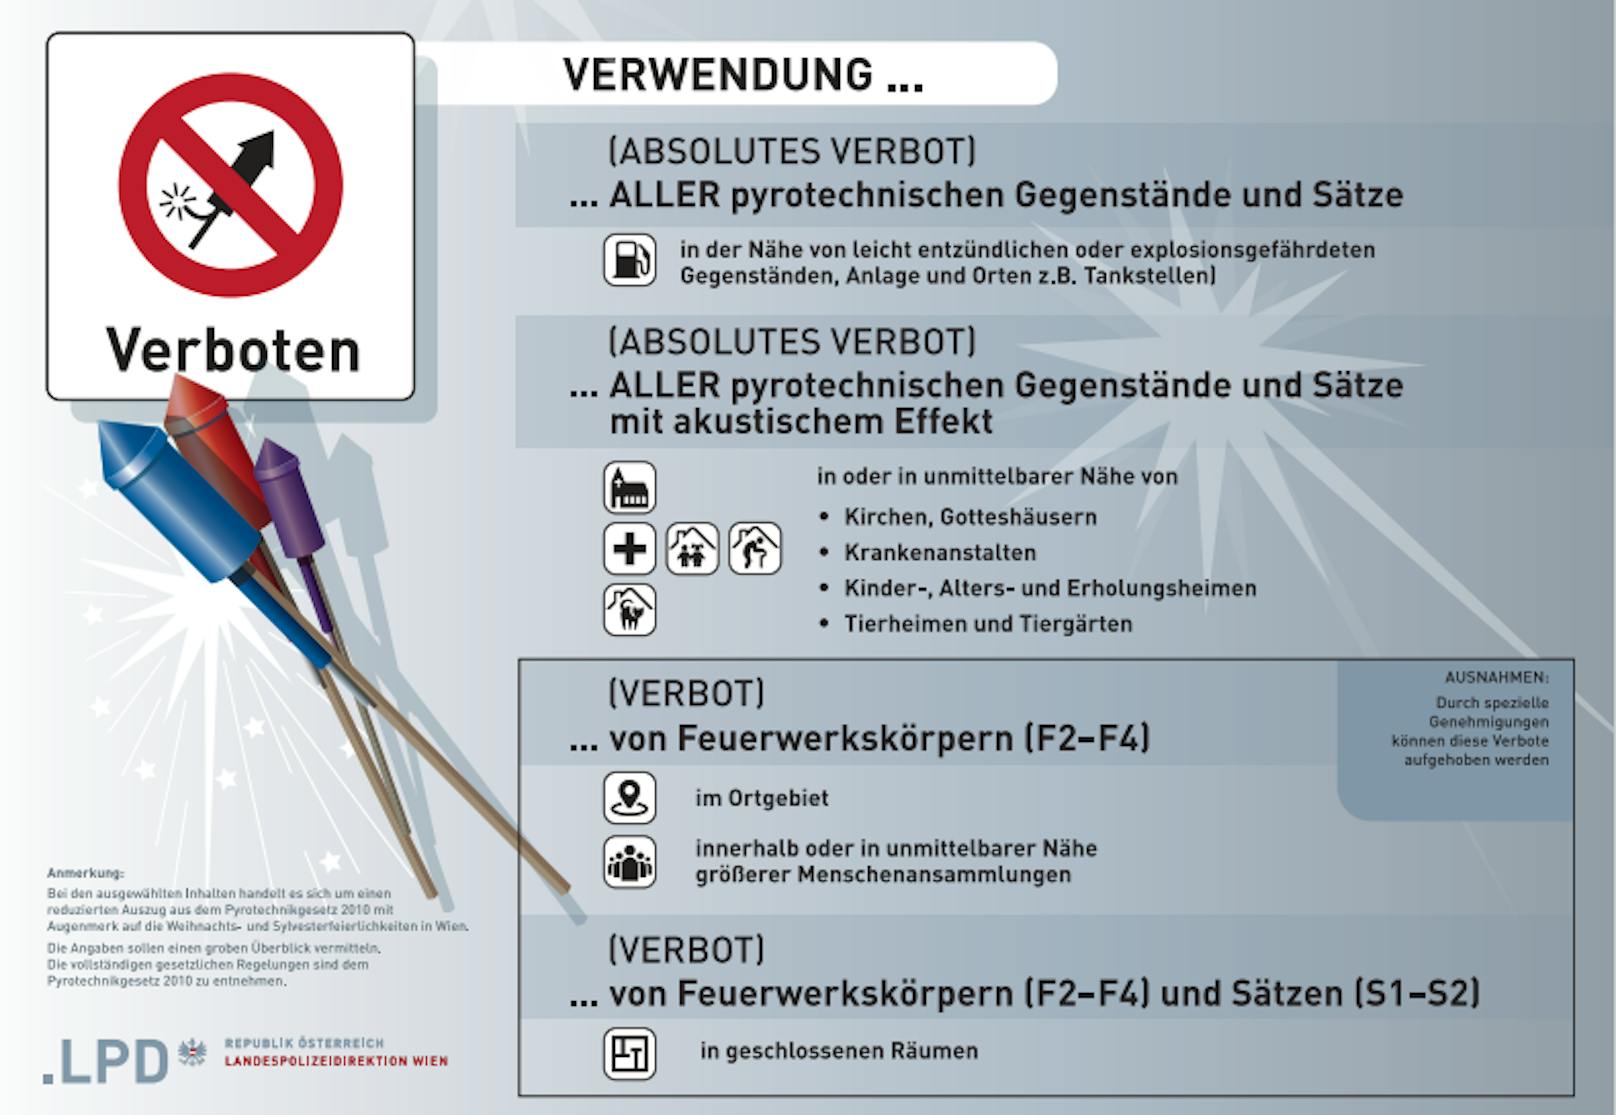 Im Wiener Ortsgebiet gelten für Feuerwerkskörper strenge Verbotsregeln.